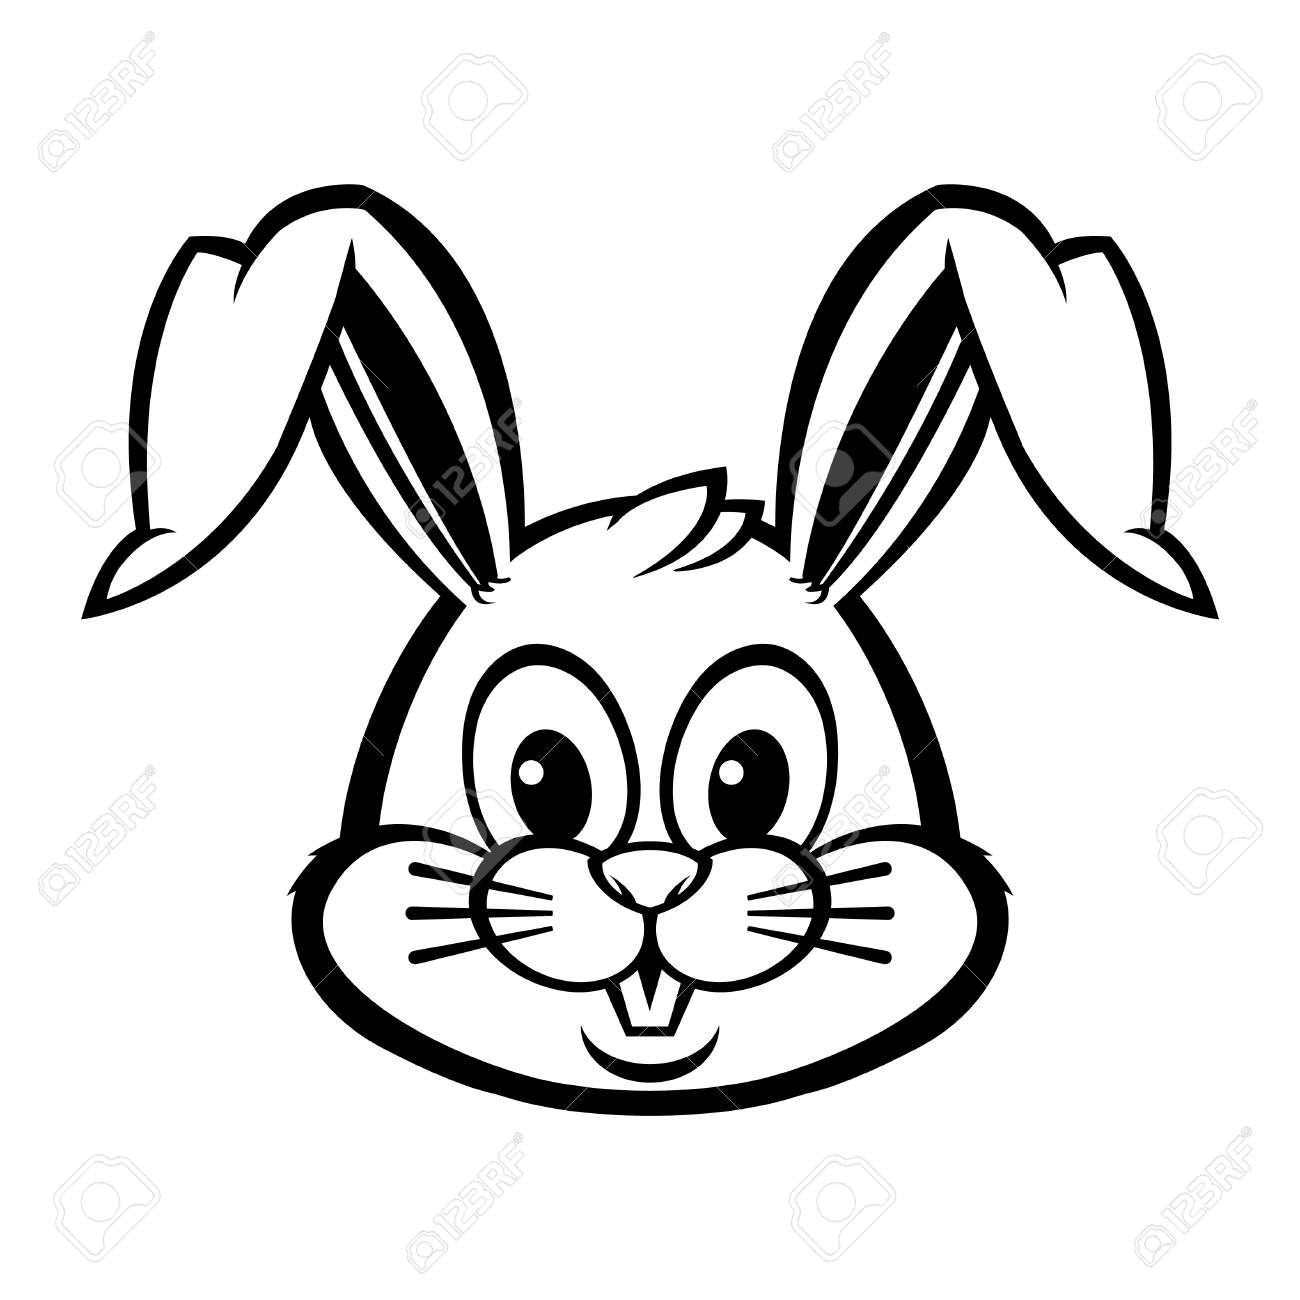 Cartoon Bunny Face Easy - Bunnies clipart easy, Bunnies easy